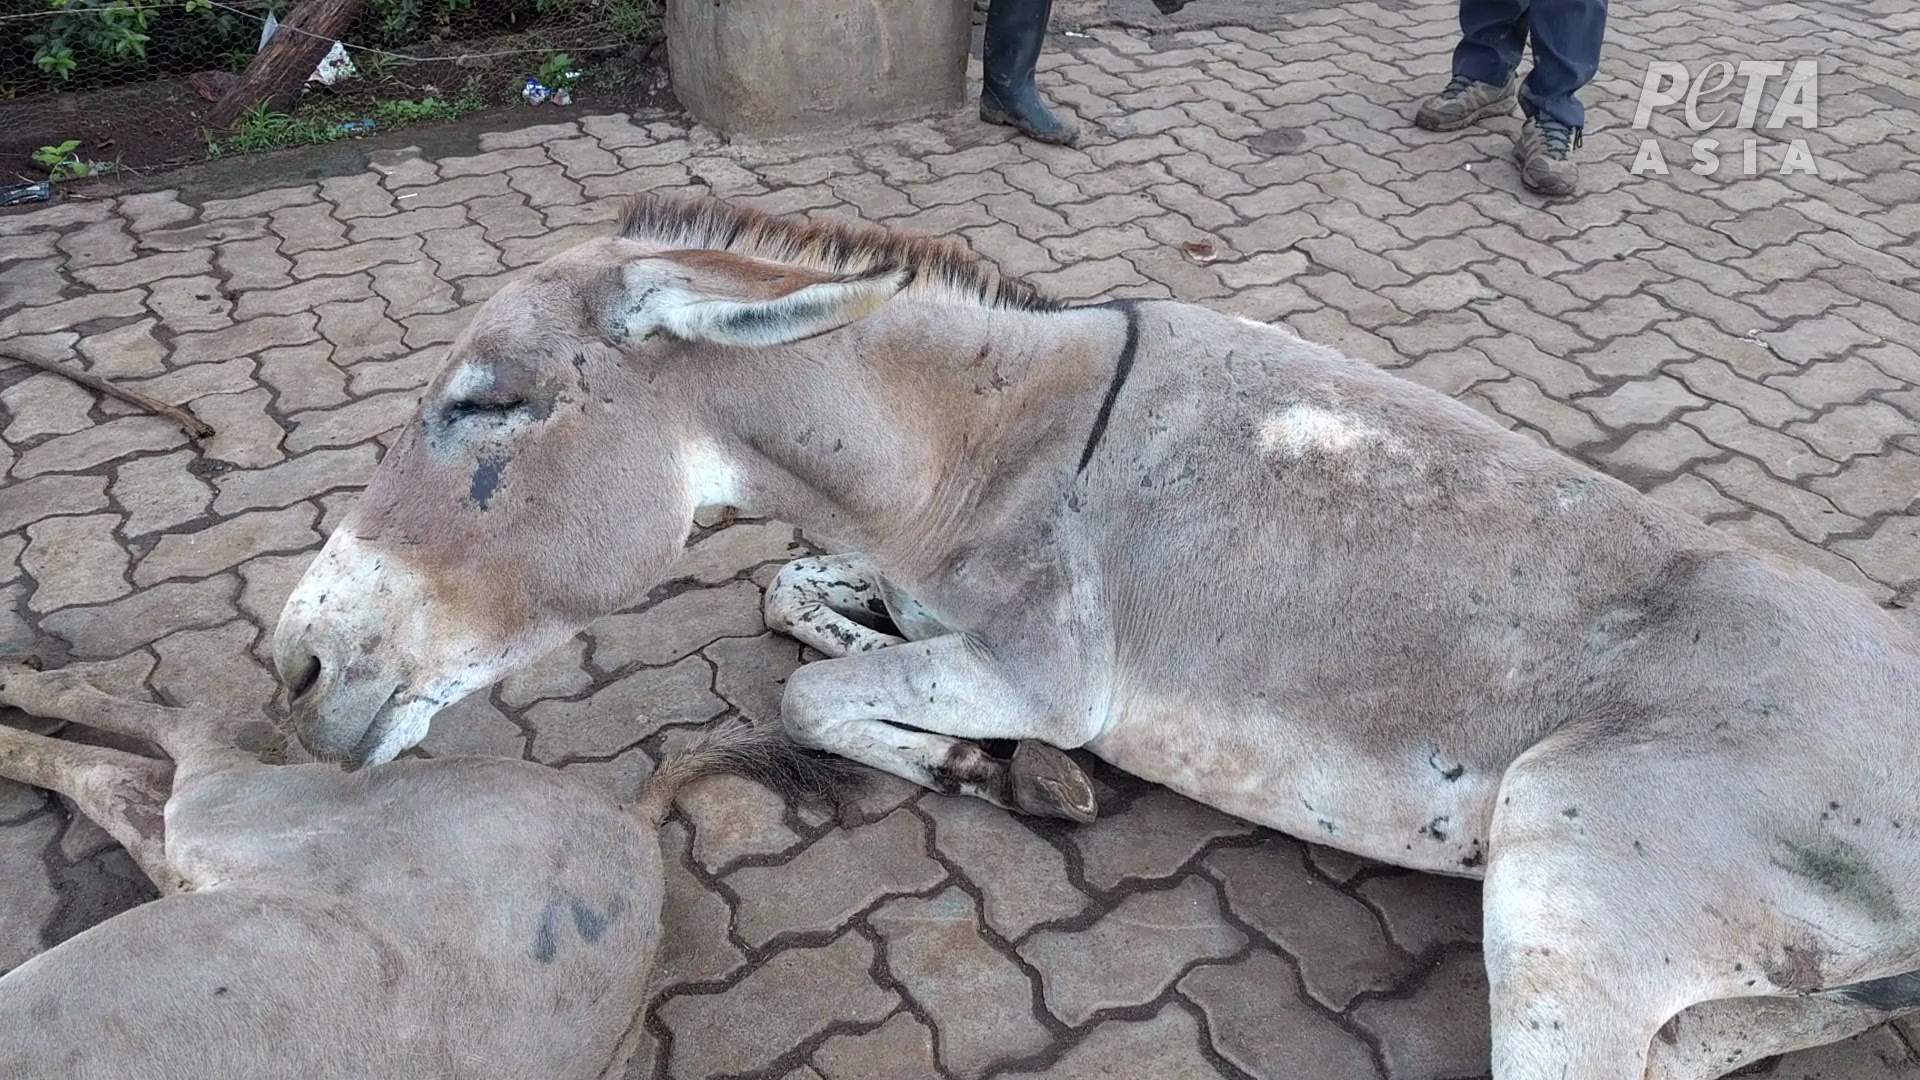 Injured donkey dumped outside slaughterhouse